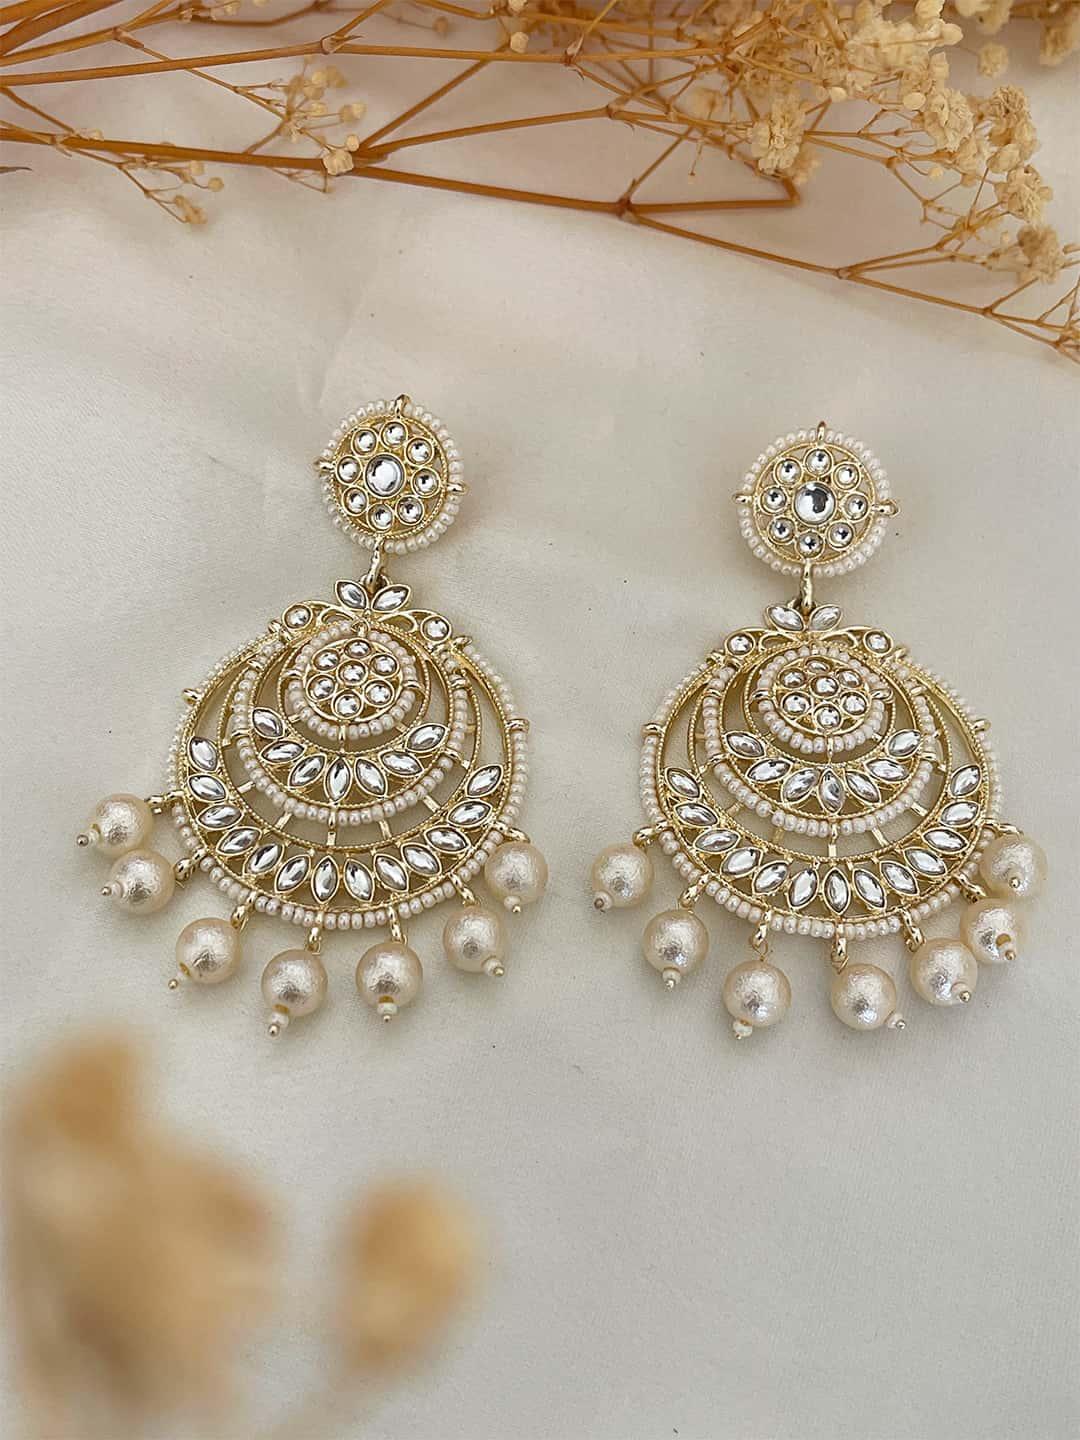 Ishhaara Megha Mathew In Kundan Chandbali Earrings With Pearls